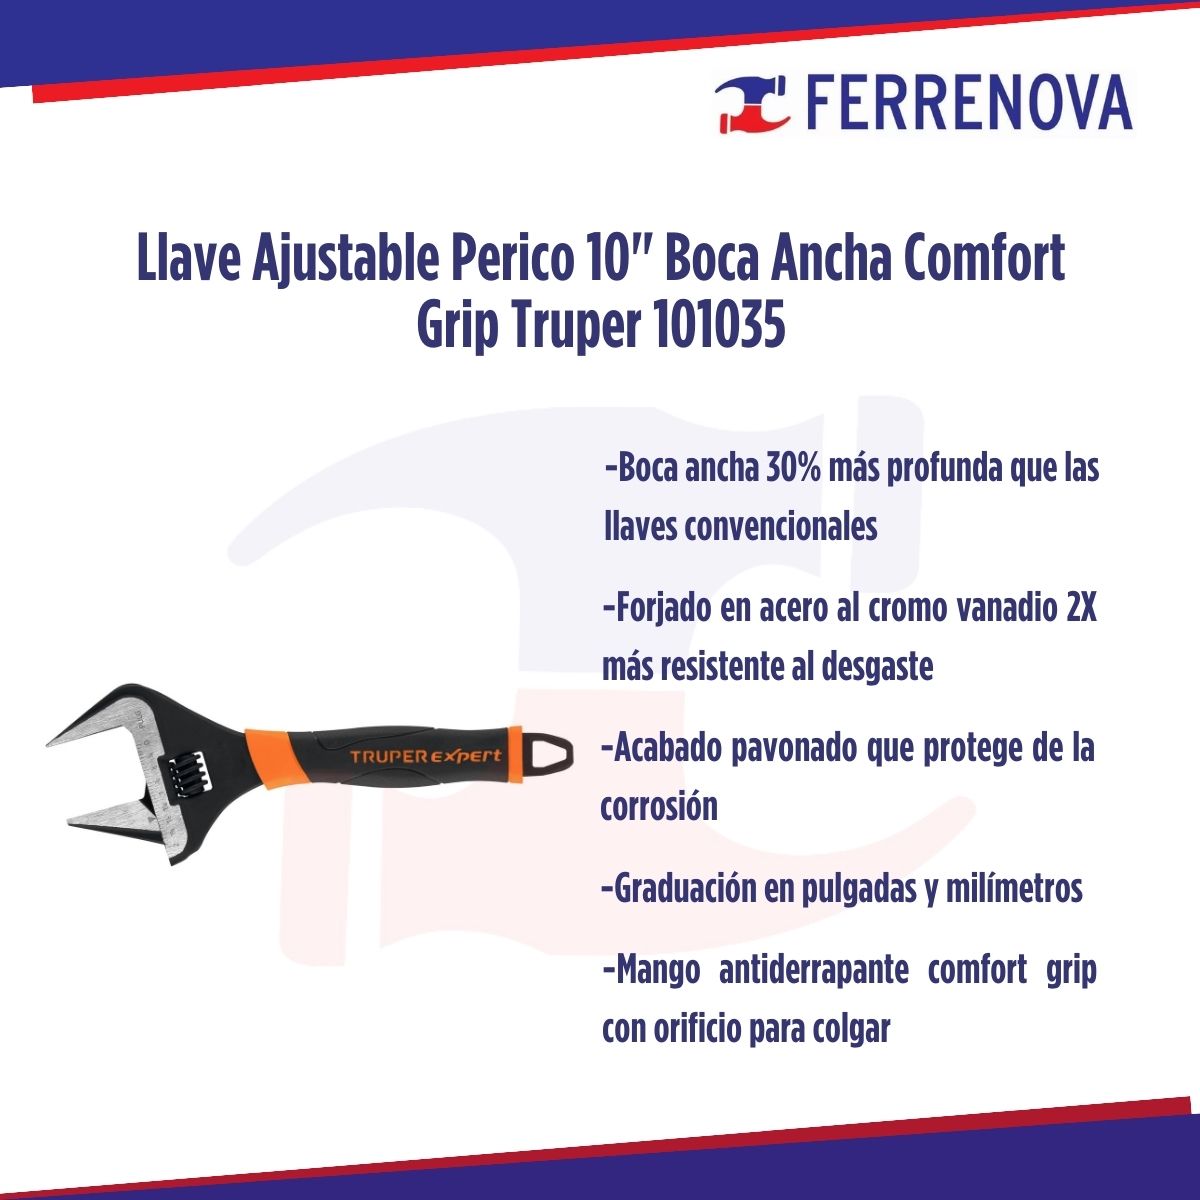 Llave Ajustable Perico 10" Boca Ancha Comfort Grip Truper 101035